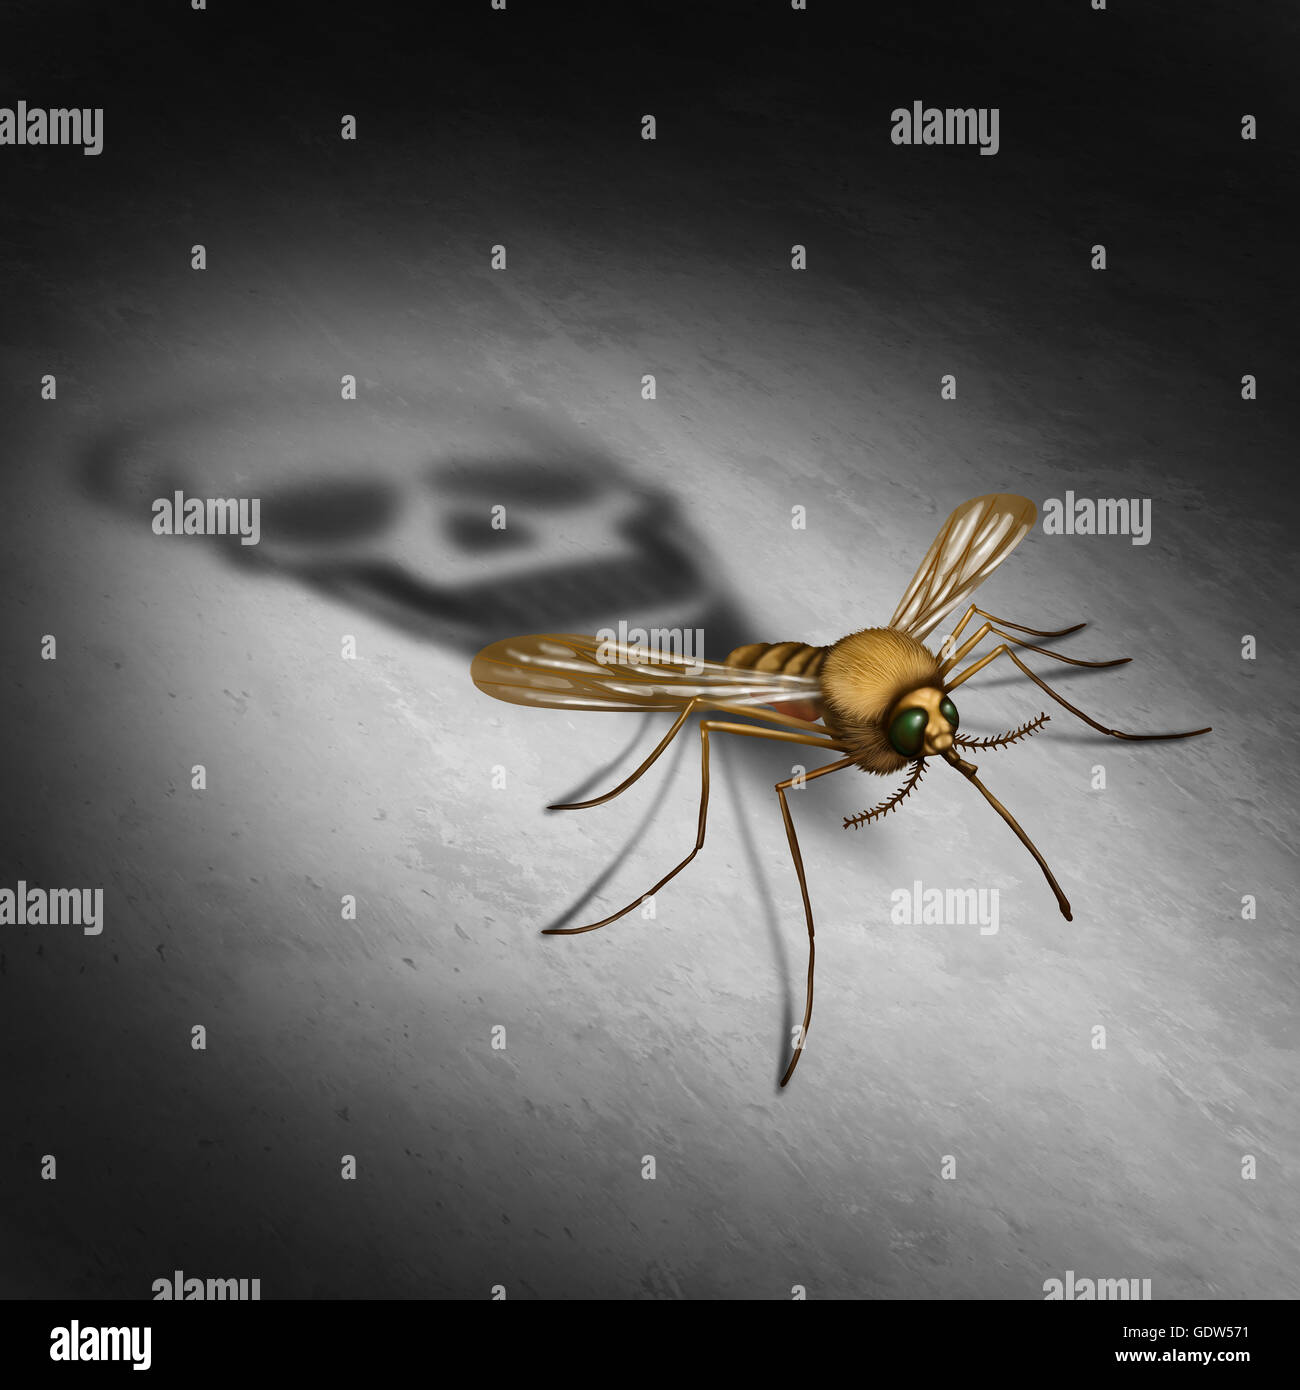 Mosquitto übertragende Krankheit Krankheitskonzept als ein infizierter Insekten Casting ein Schatten, geformt wie ein Tod Schädel für Zika-Virus Risiko darstellt die Gefahr der Übertragung von Infektionen durch Fehler beißt, was zu Infektionen und Fieber in einer 3D Darstellung Stockfoto